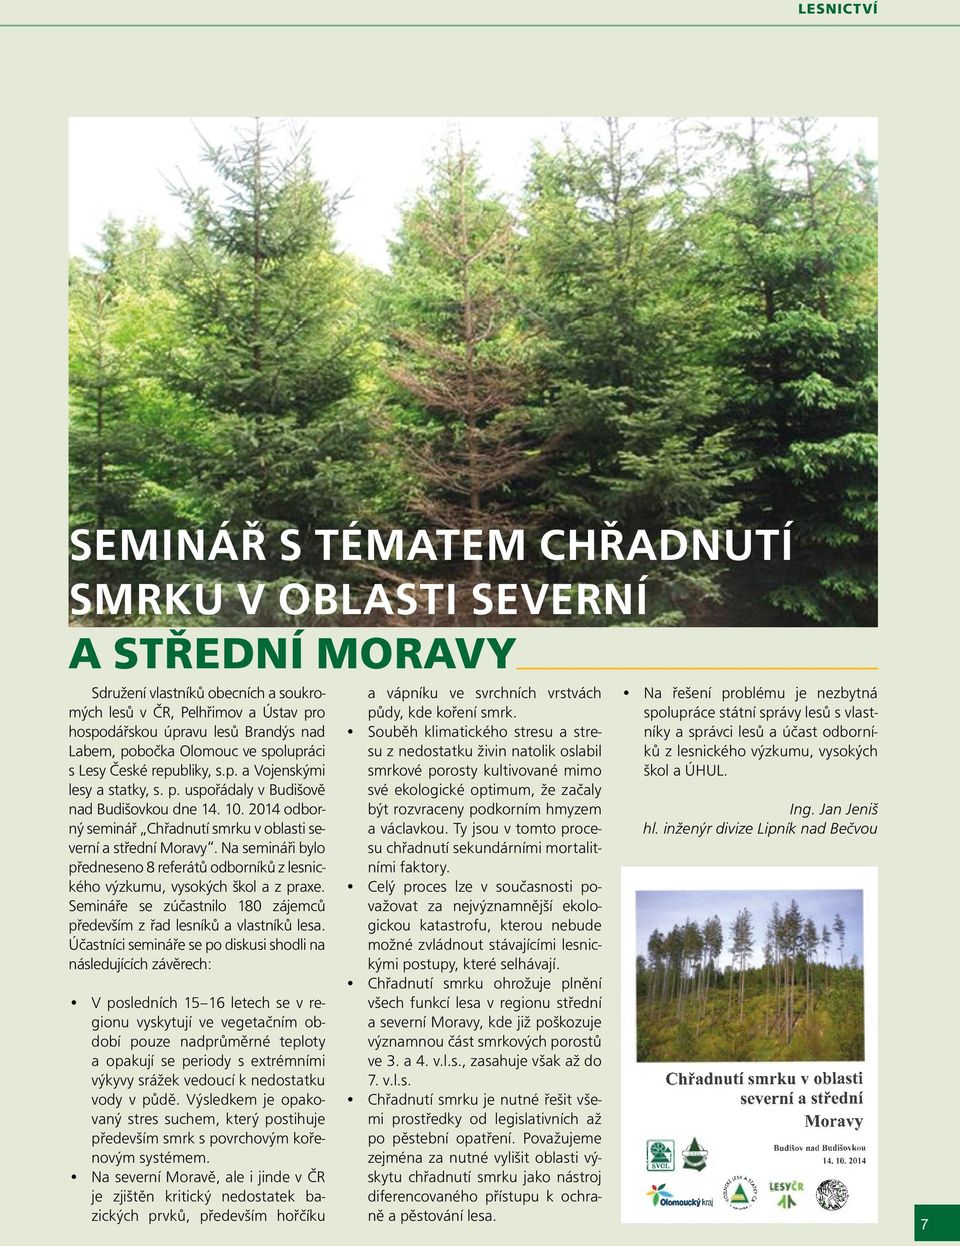 2014 odborný seminář Chřadnutí smrku v oblasti severní a střední Moravy. Na semináři bylo předneseno 8 referátů odborníků z lesnického výzkumu, vysokých škol a z praxe.